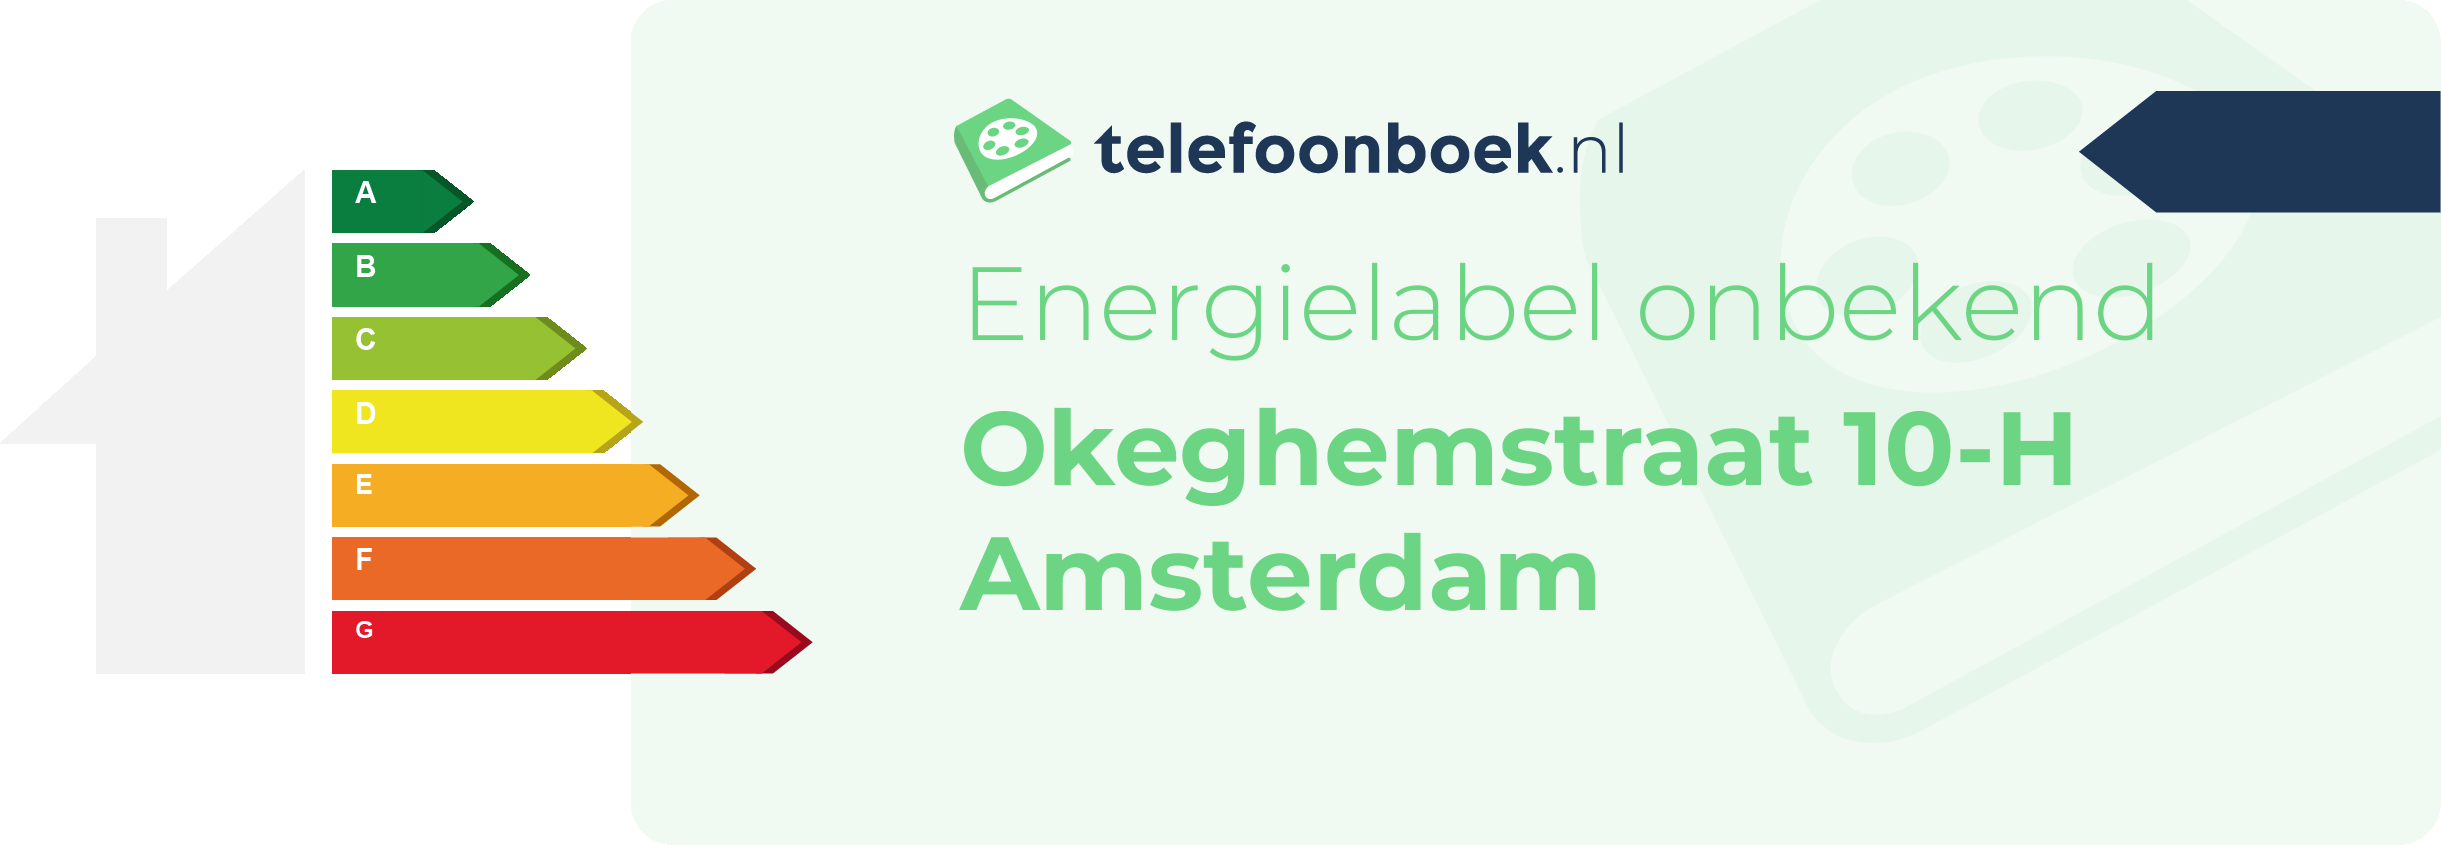 Energielabel Okeghemstraat 10-H Amsterdam